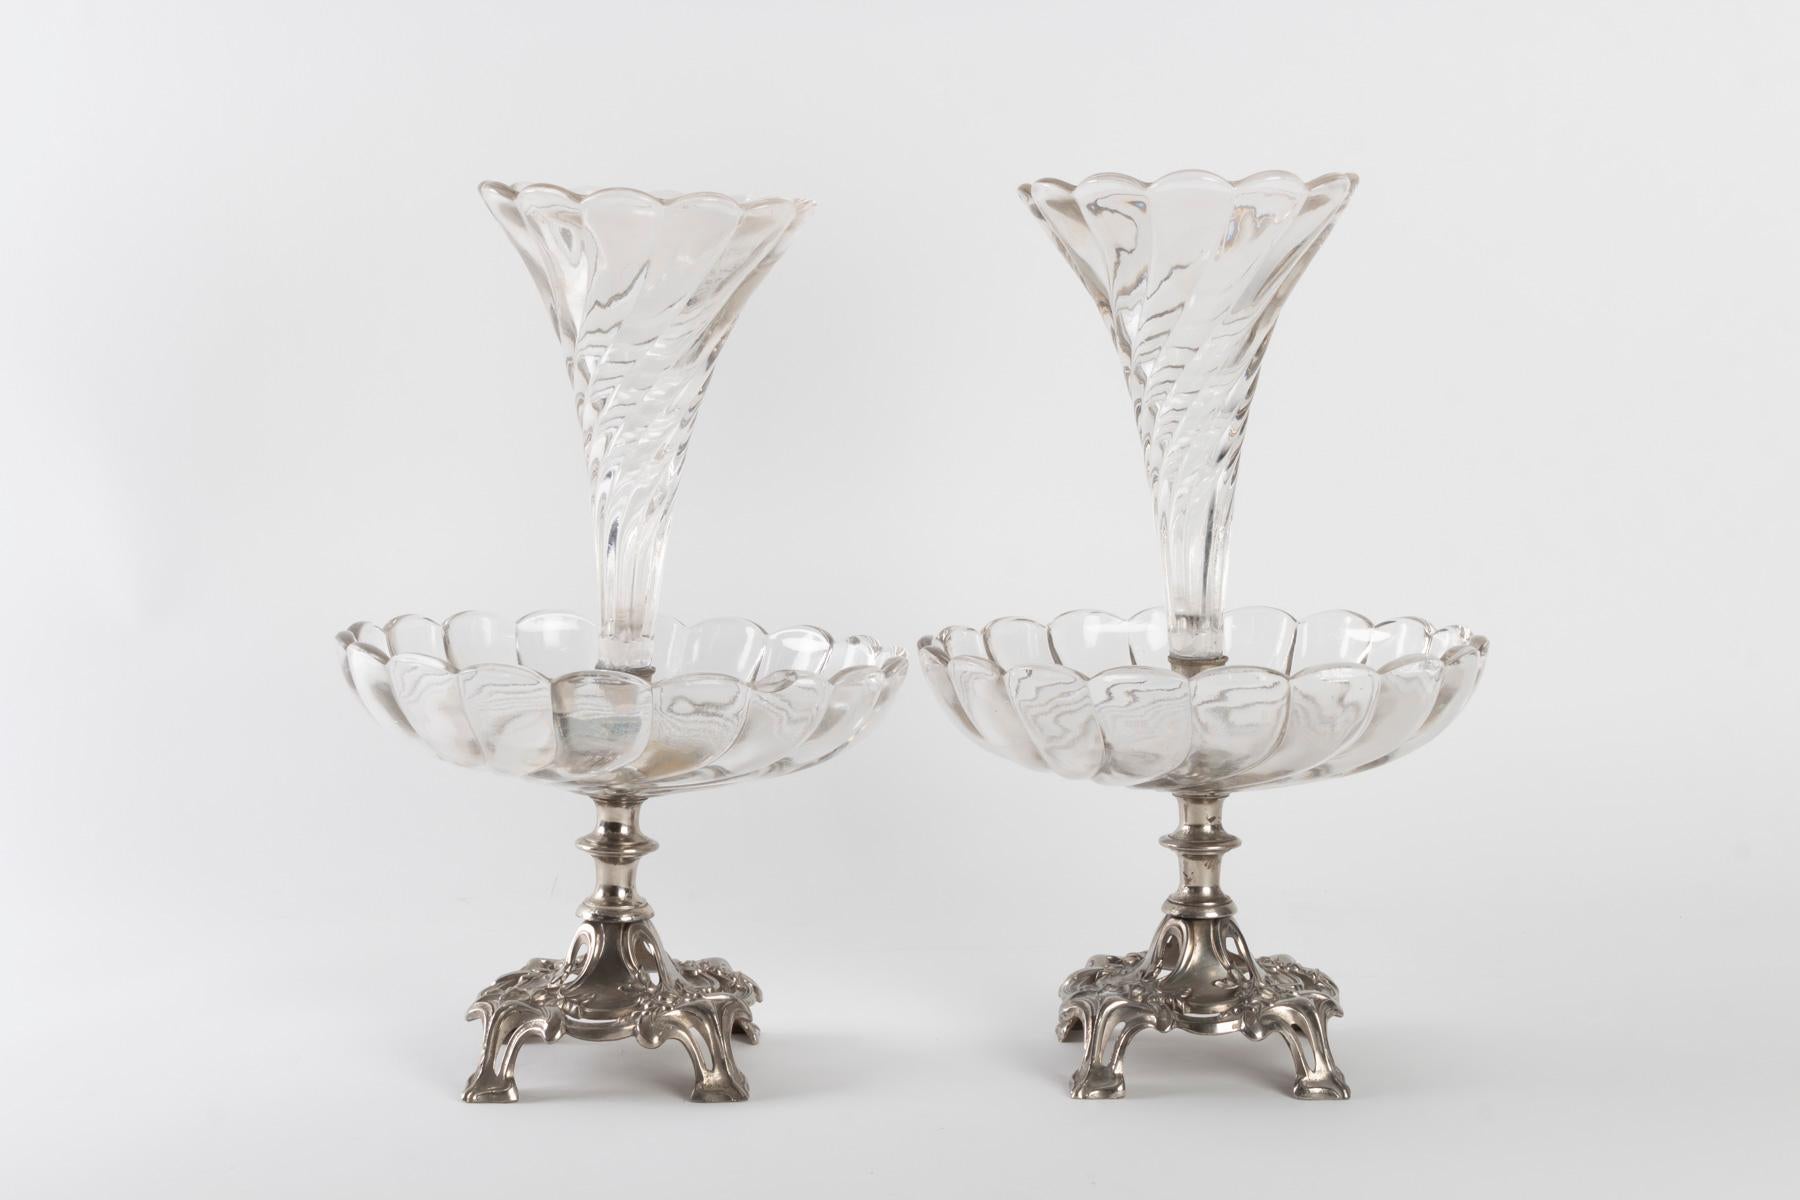 Paar versilberte und kristallene Bouquetières aus Metall, Jugendstil, 1910
Maße: H 35cm, T 22cm.